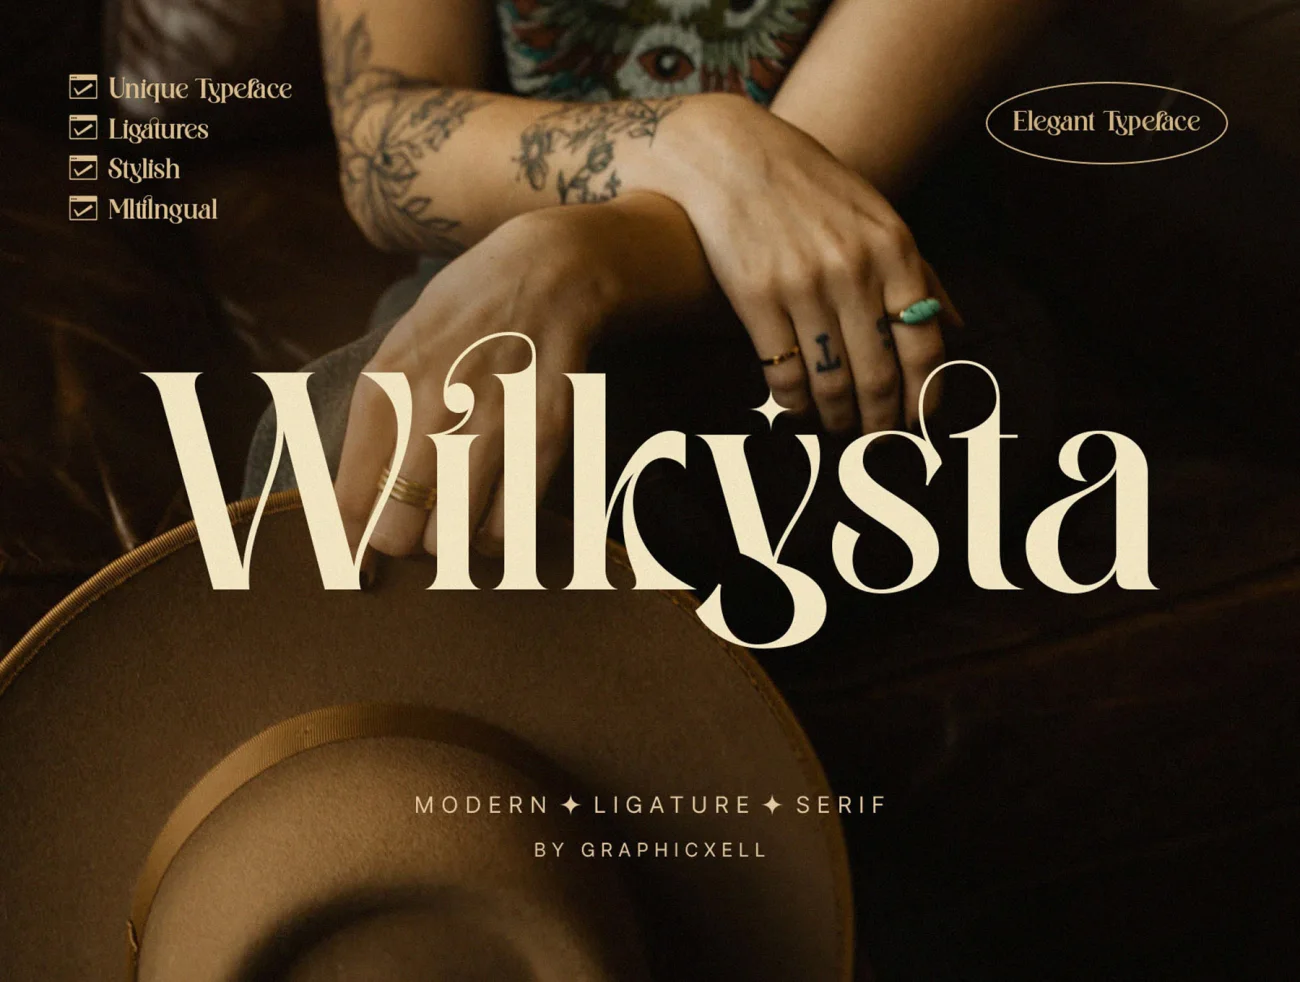 潮流时尚连字英文标题字体 Wilkista – Stylish Ligature Typeface插图1